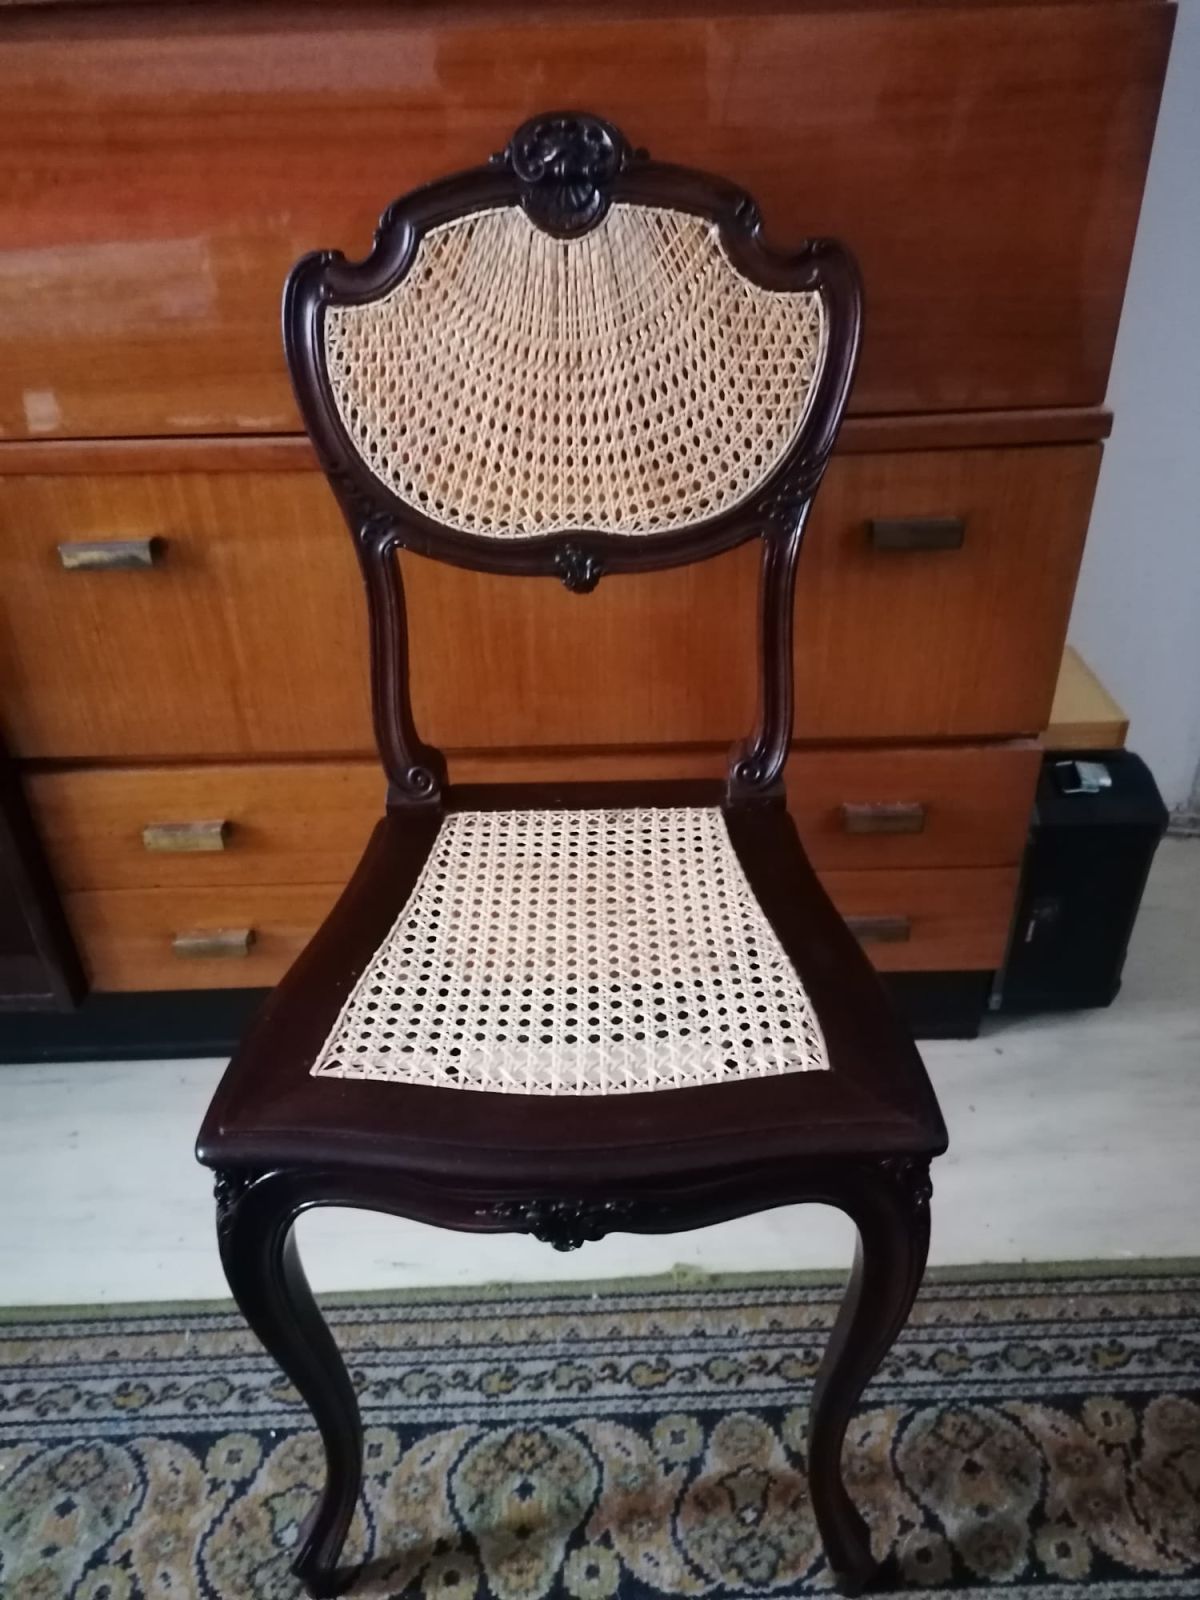 Mobila veche primește o nouă viață. Pentru restaurare și recondiționare, cumpărați din magazinul nostru online chingi de calitate pentru repararea scaunelor.